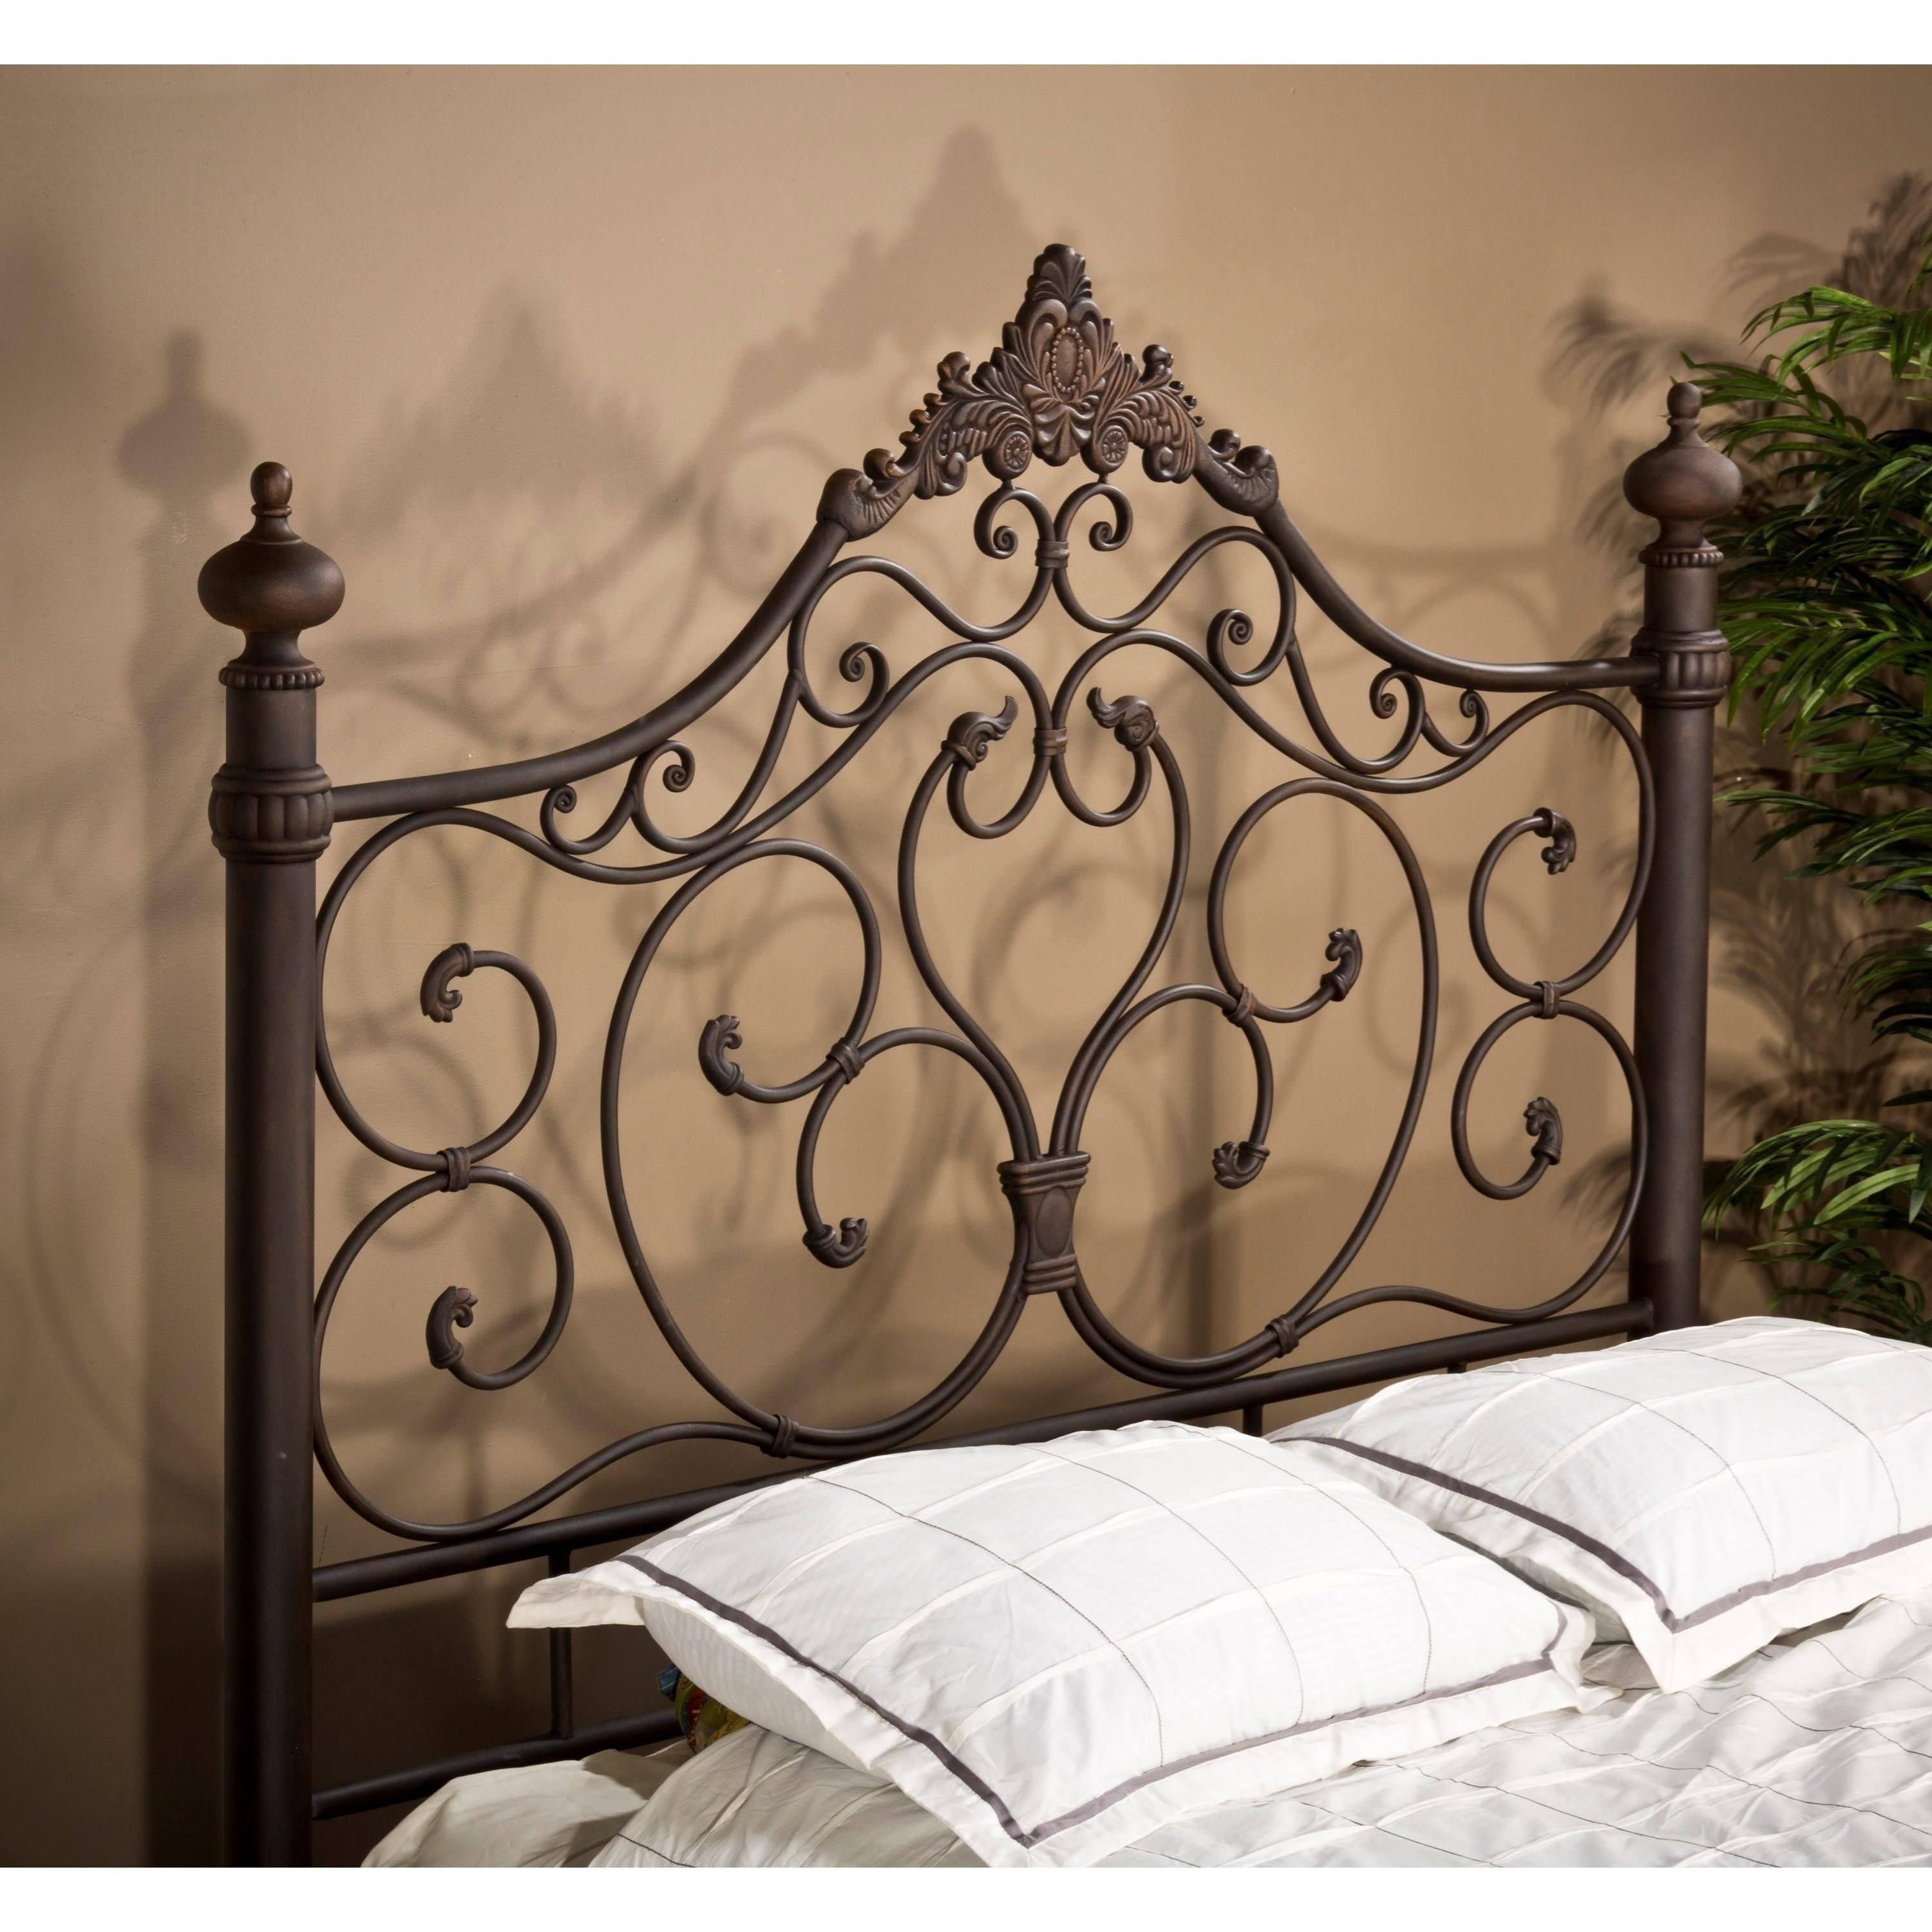 Кованые кровати (65 фото) — с мягким изголовьем, двуспальные и одноместные, малазийские варианты в интерьере спальни, отзывы